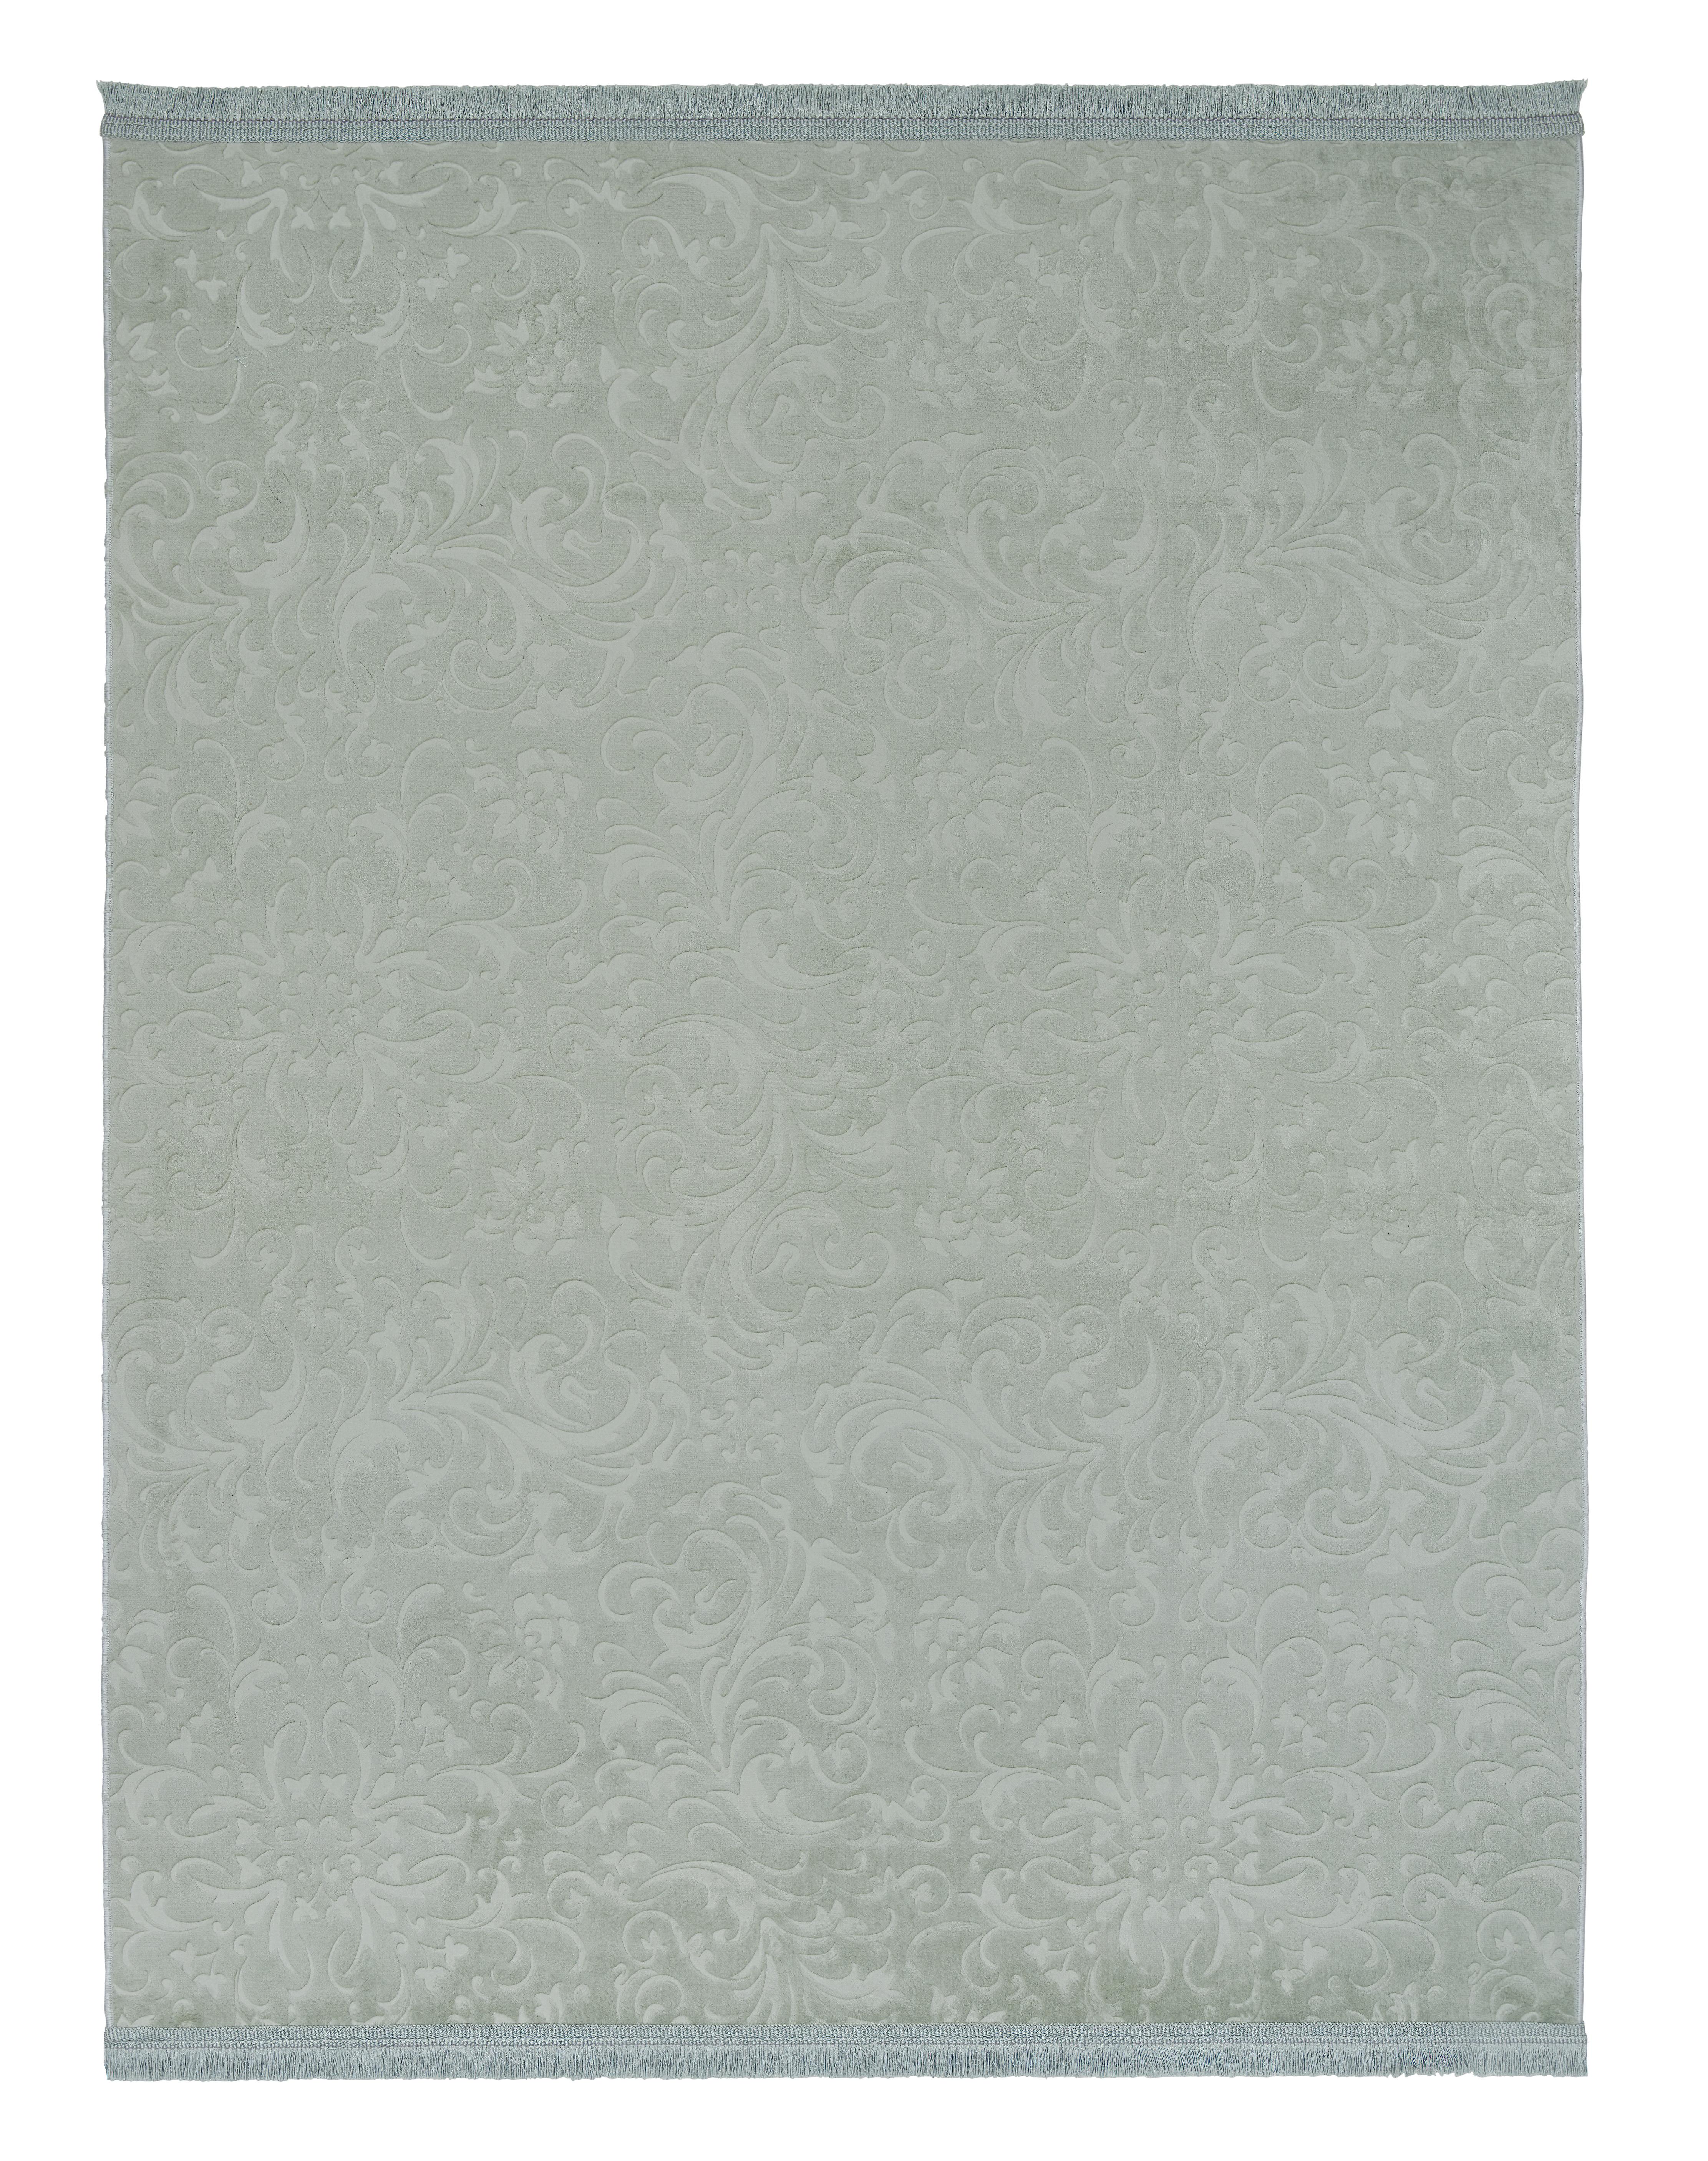 Tkaný Koberec Daphne 2, 120/160cm, Zelená - zelená, Moderní, textil (120/160cm) - Modern Living